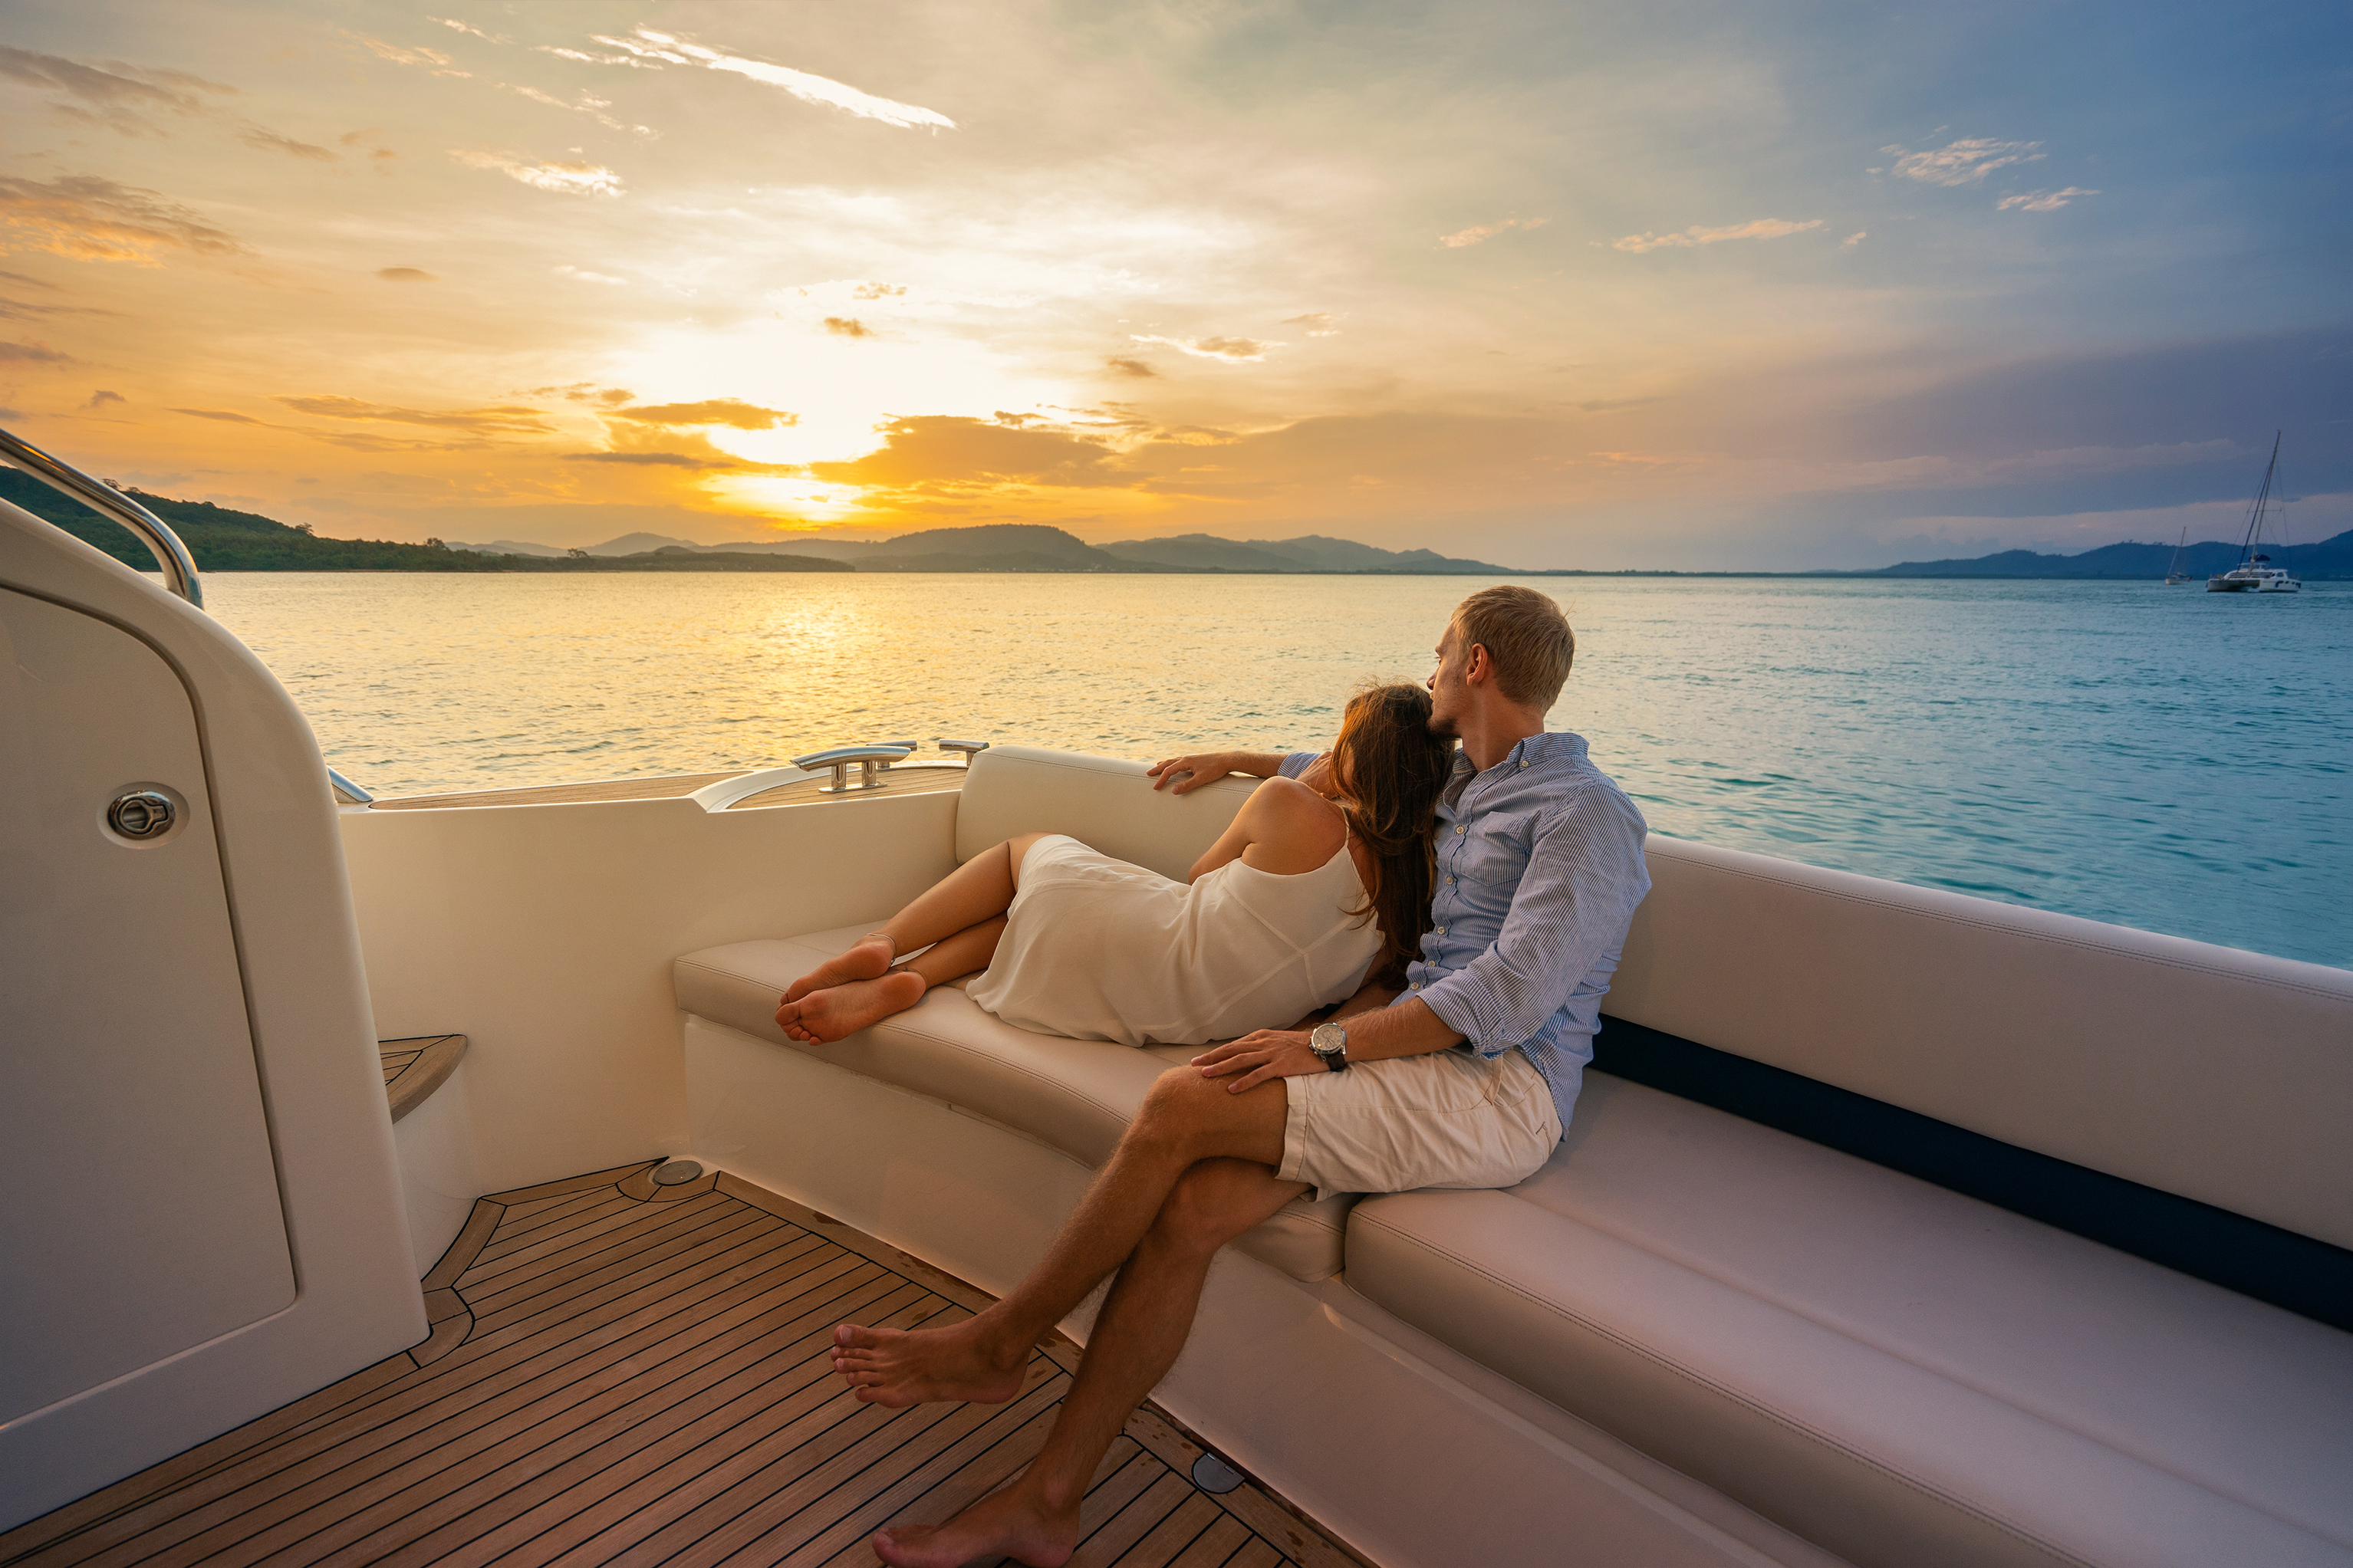 Vacaciones románticas . Hermosa pareja mirando la puesta de sol desde el yate. | Fuente: Shutterstock